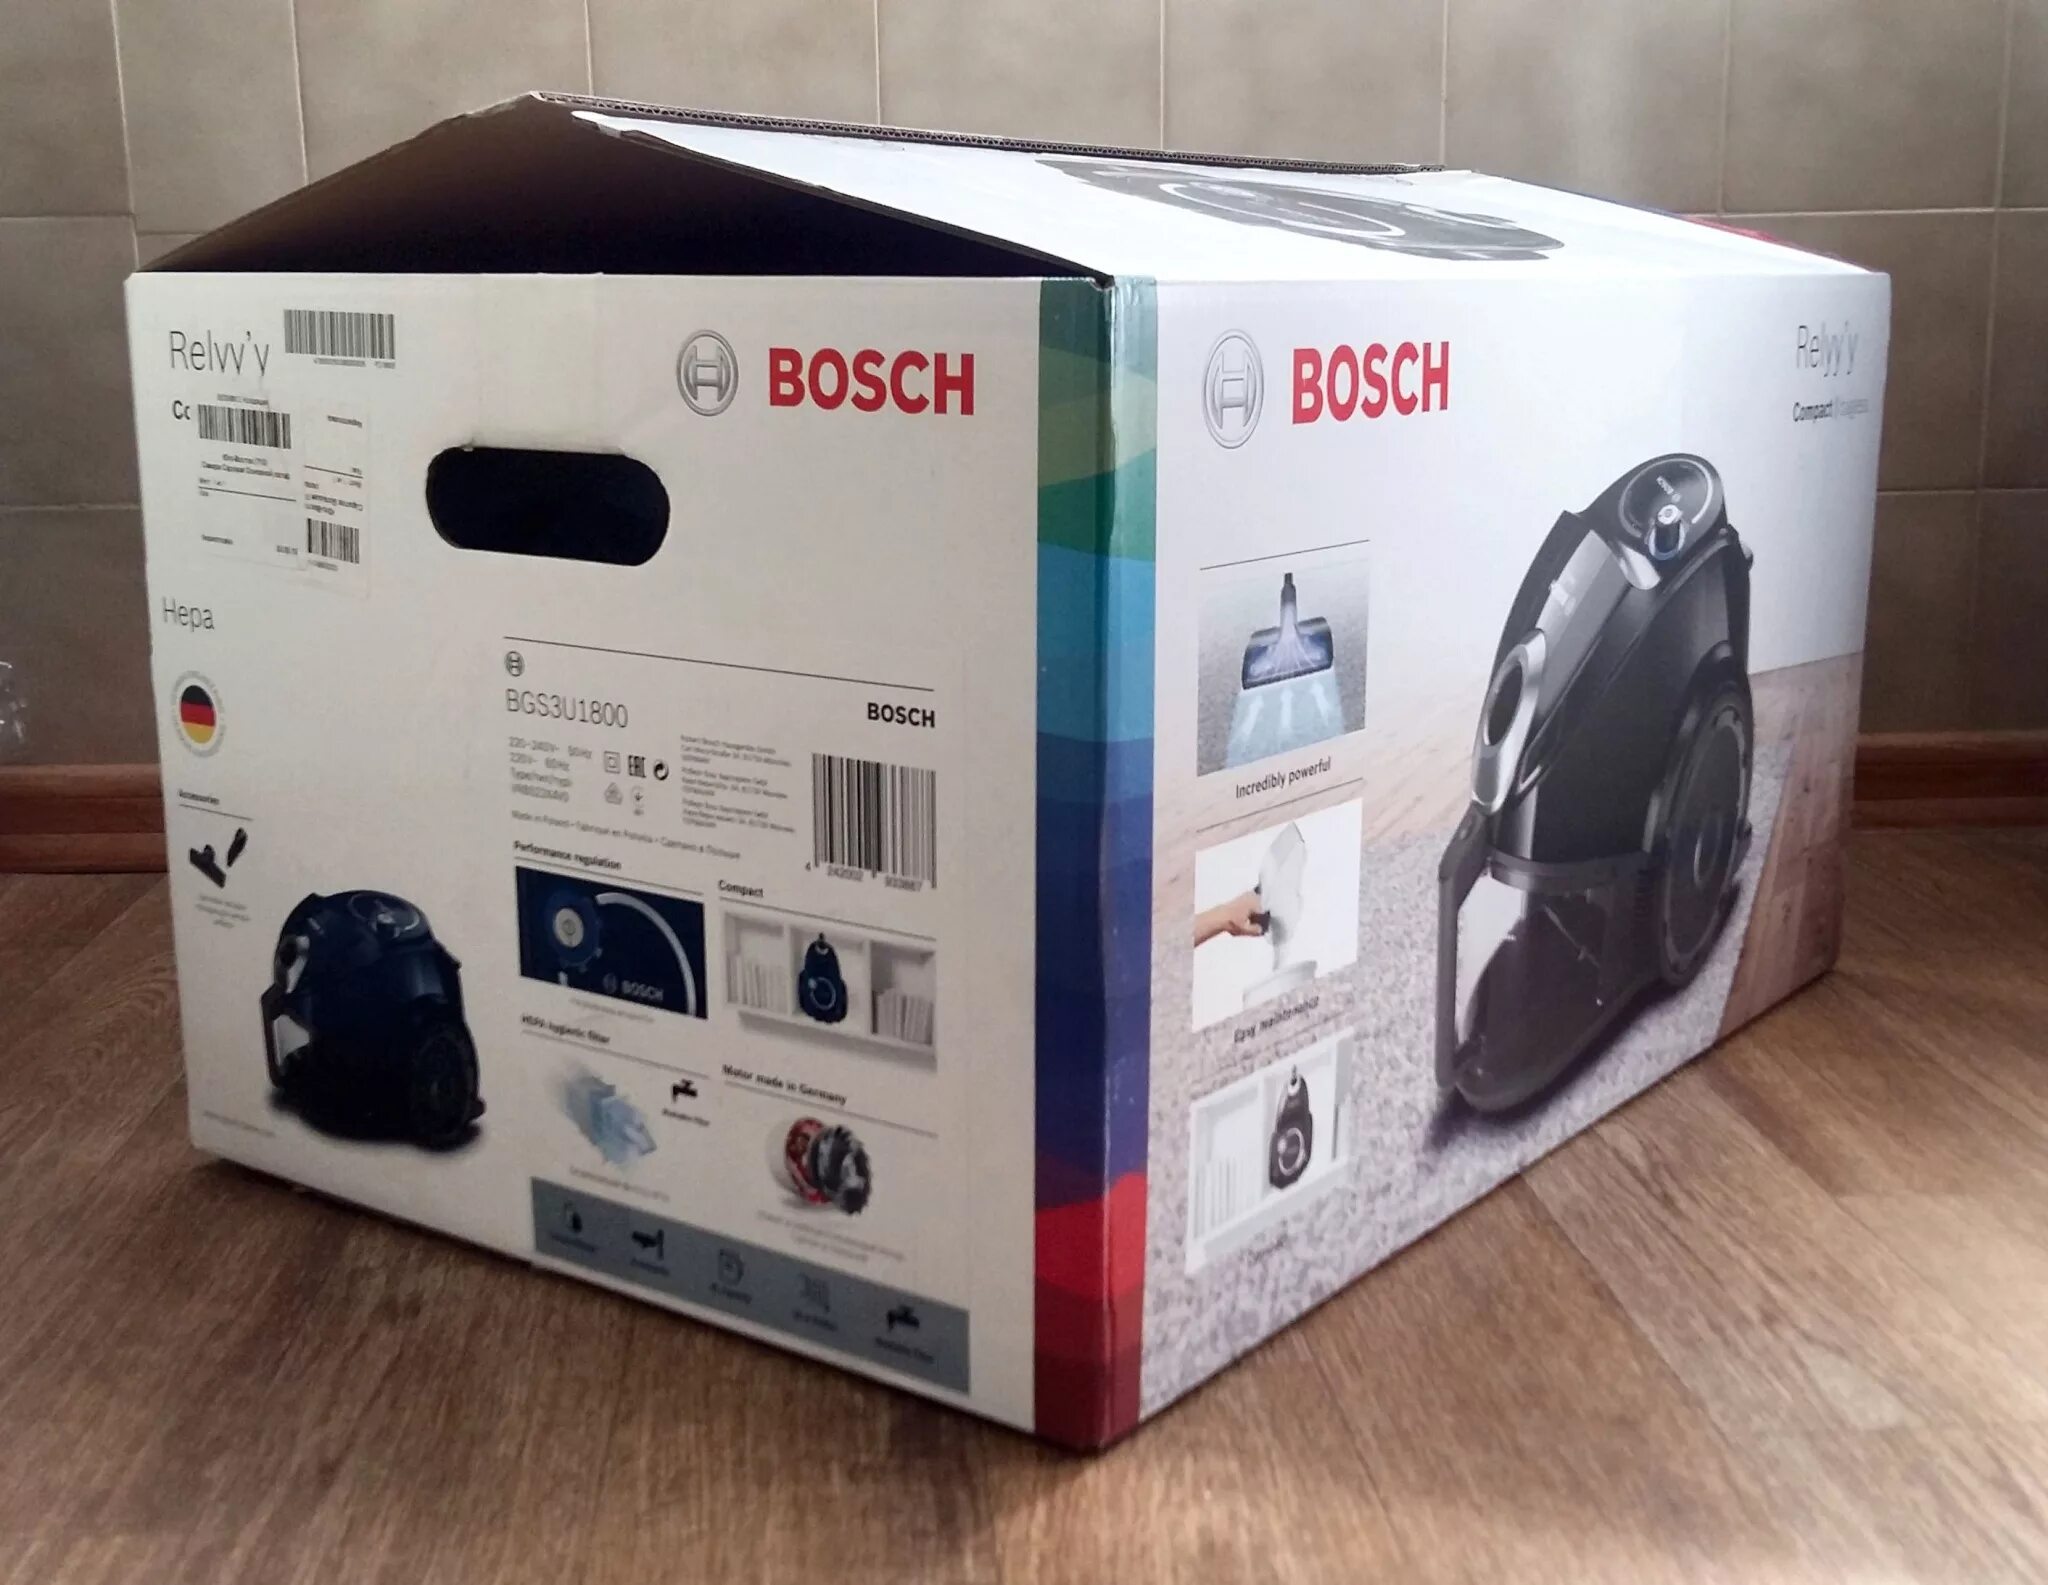 Интернет 1800. Bosch коробка. Bosch упаковка. Пылесос Bosch коробки. Упаковка Bosch для пылесосов.